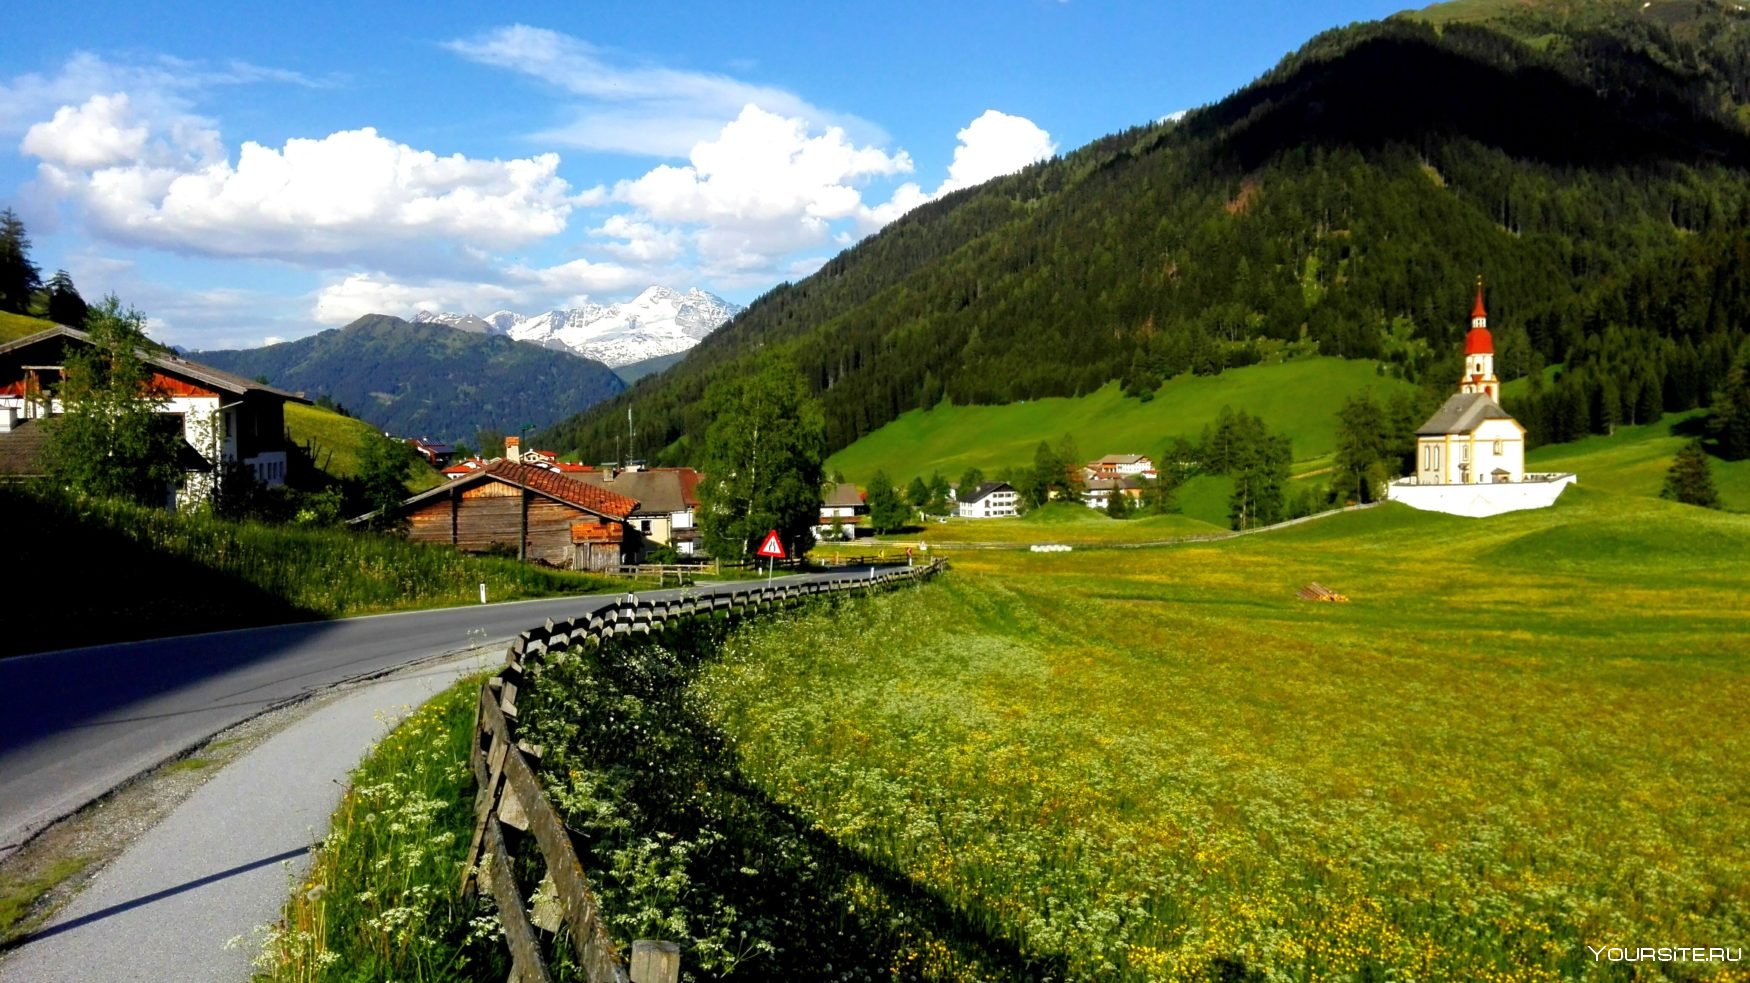 Австрия это. Швабы в горной Австрии. В Подмосковье маленькая Австрия. Маленькая Страна на юге Австрии. Австрия - это небольшая Страна в центральной Европе.